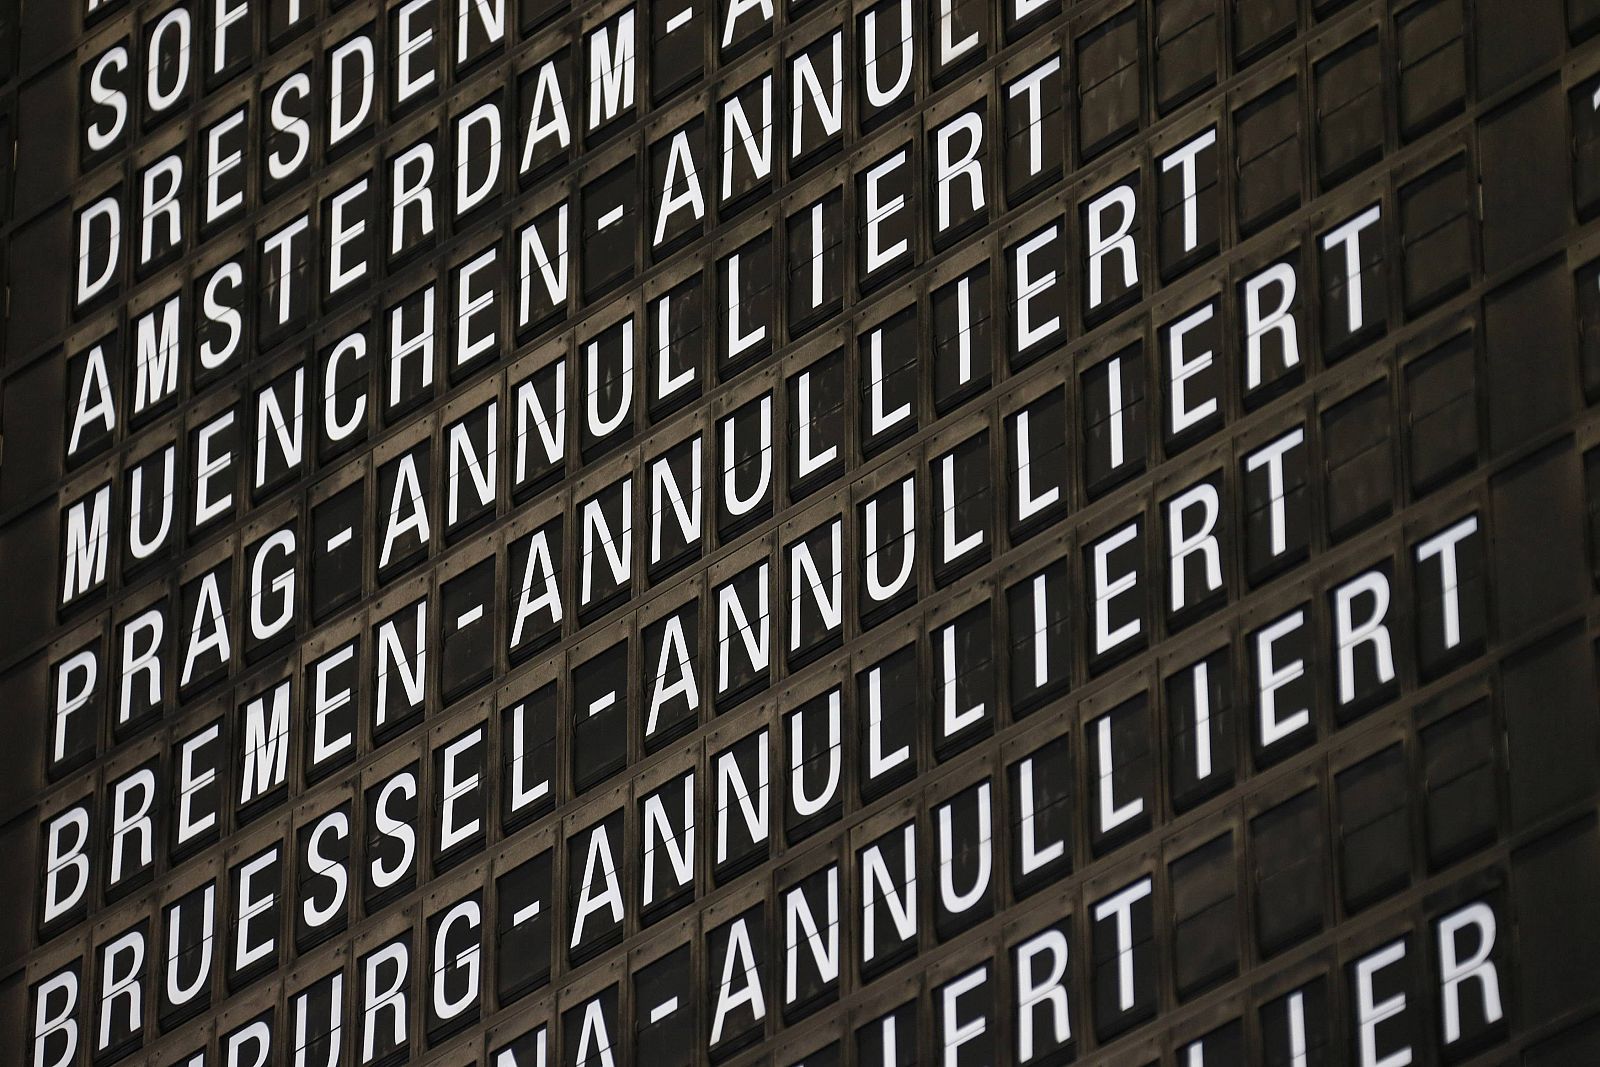 Un panel informativo del aeropuerto de Fráncfort muestra los vuelos cancelados con motivo de la huelga